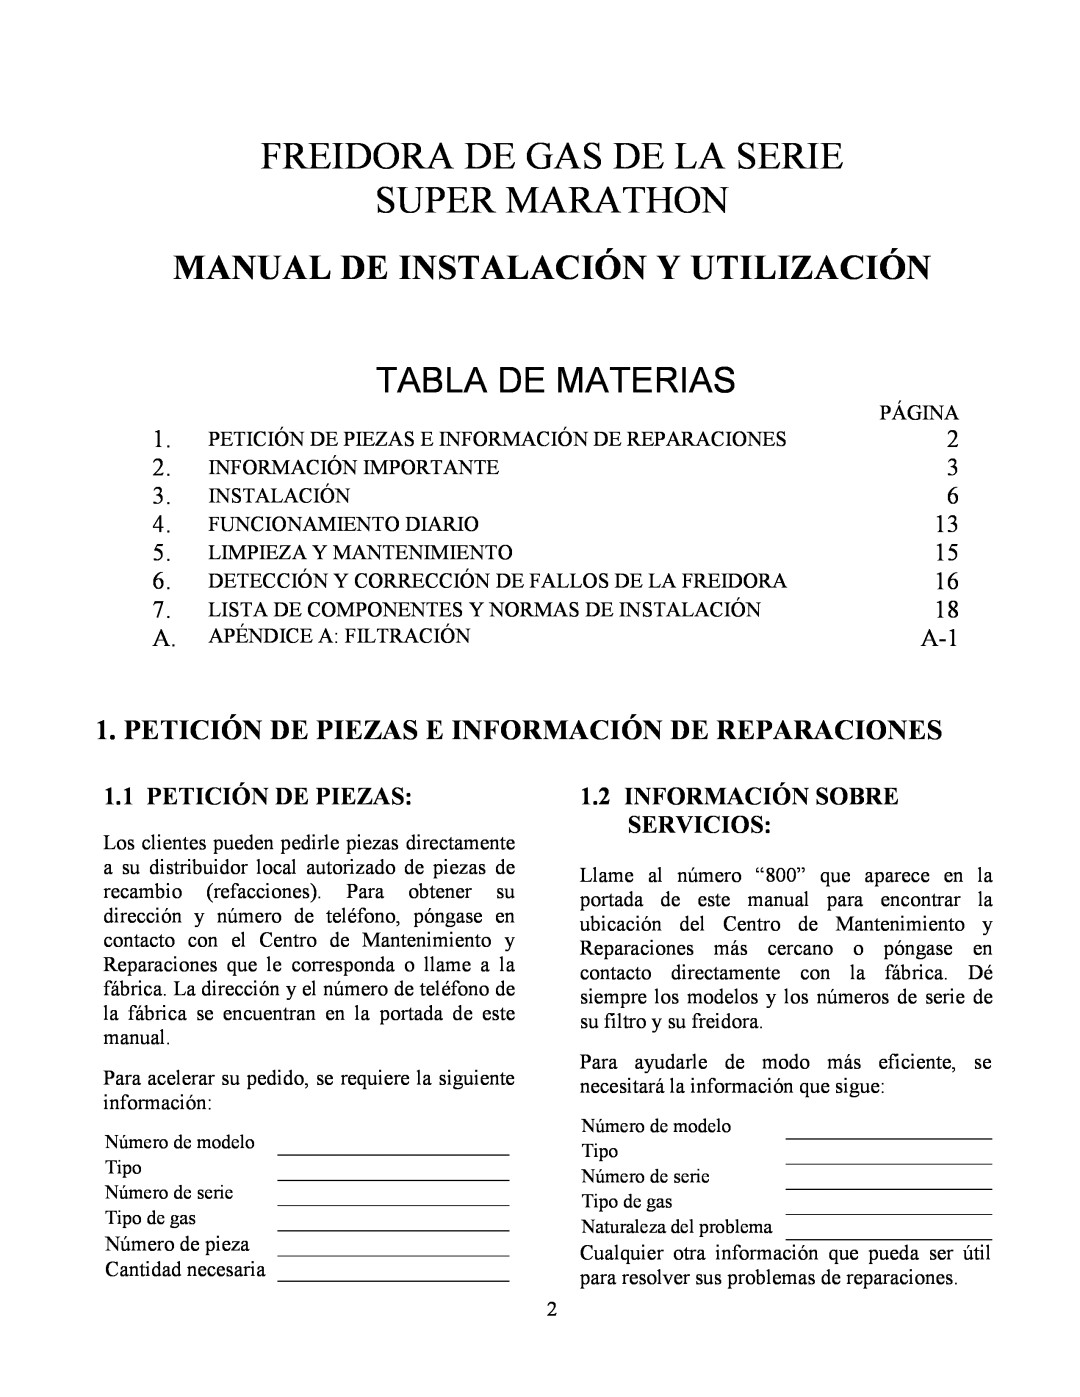 Frymaster Y SM80 manual Petición De Piezas, 1.2INFORMACIÓN SOBRE SERVICIOS, Freidora De Gas De La Serie Super Marathon 